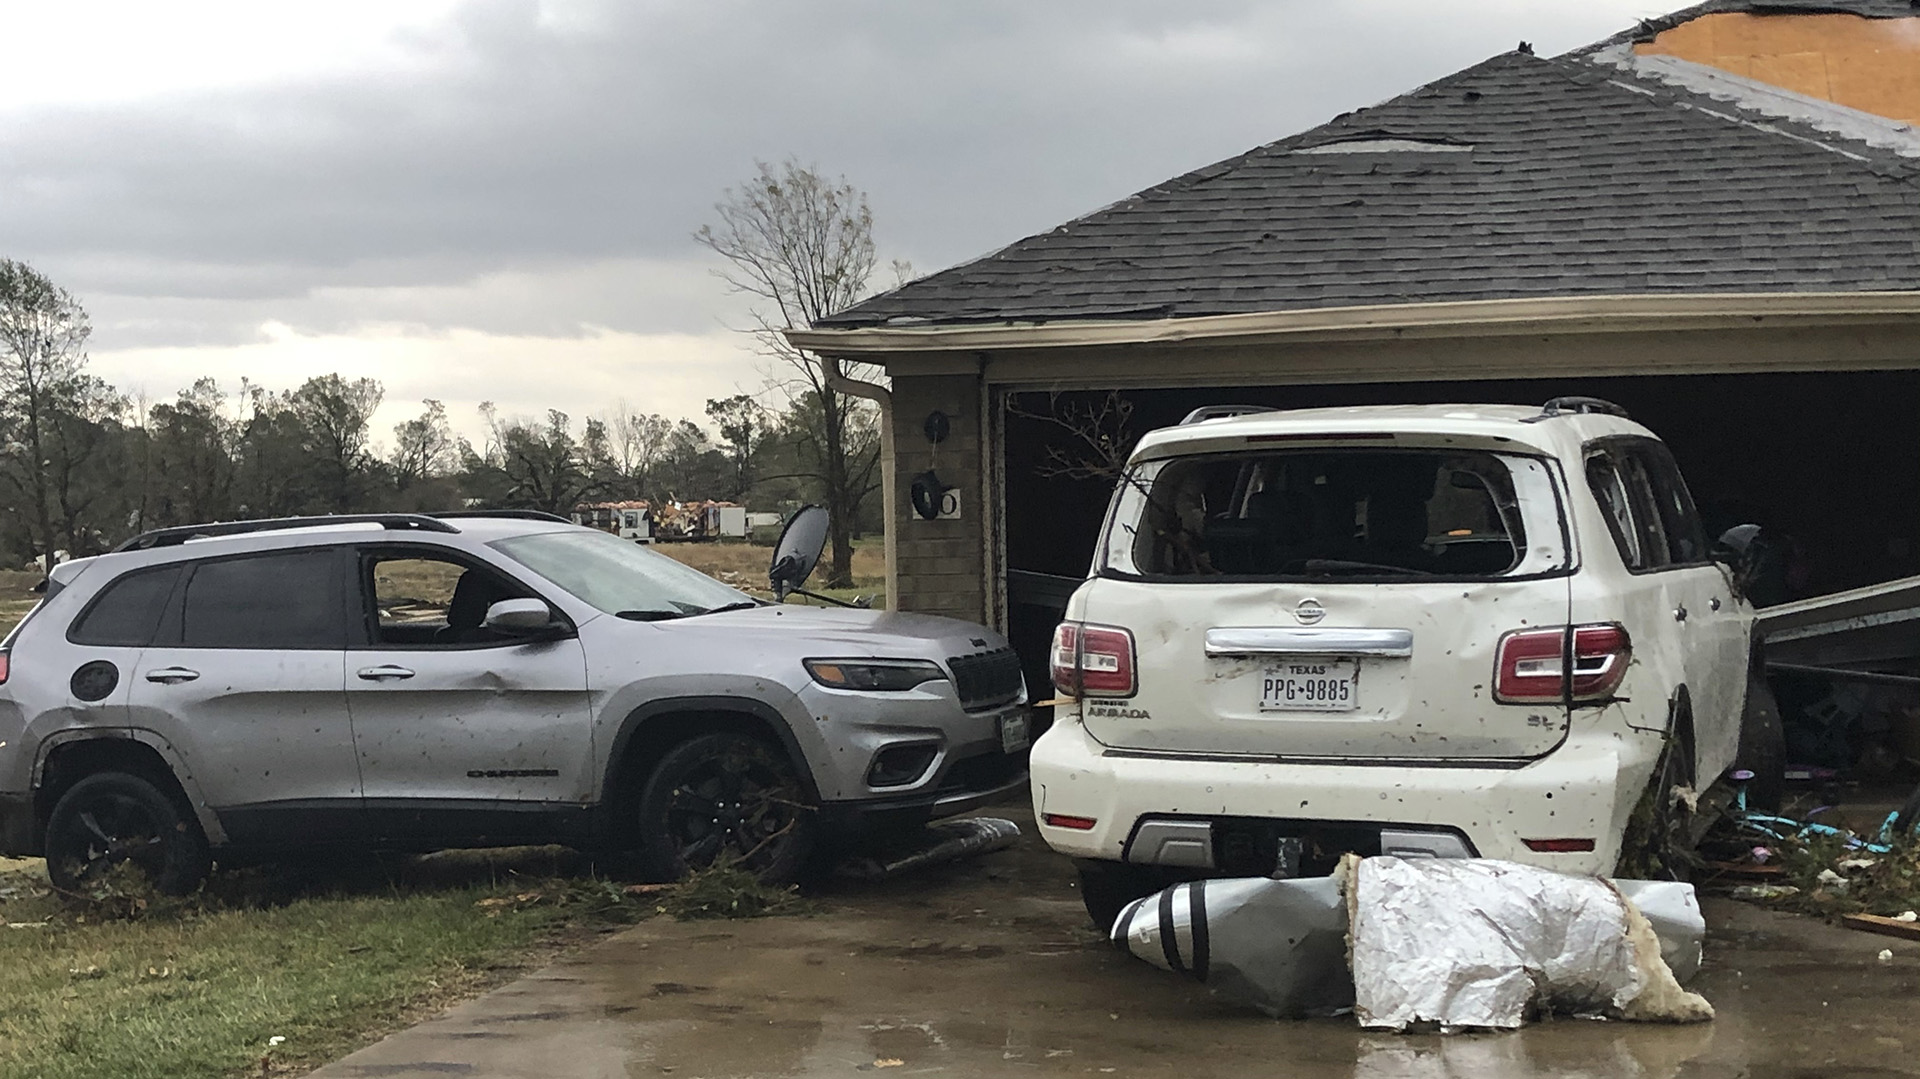 Imagen de dos vehículos dañados tras el paso de tornados en Texas (Jeff Forward/The Paris News via AP)